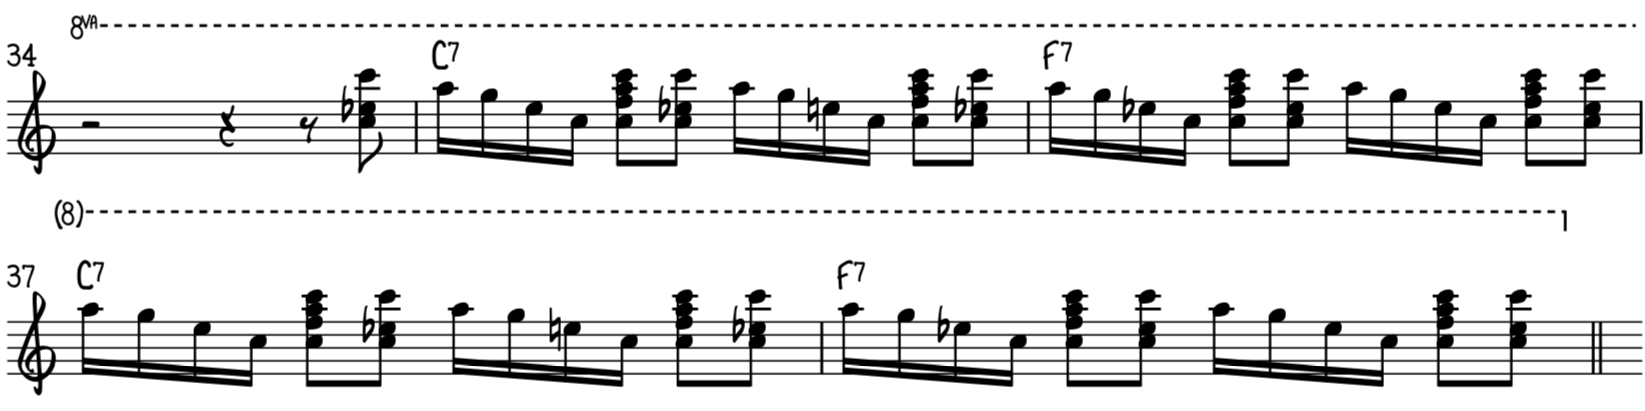 Промежуточный фанковый блюзовый фортепианный рифф 5 чередует большие гармонизированные ноты и блюзовые партии.